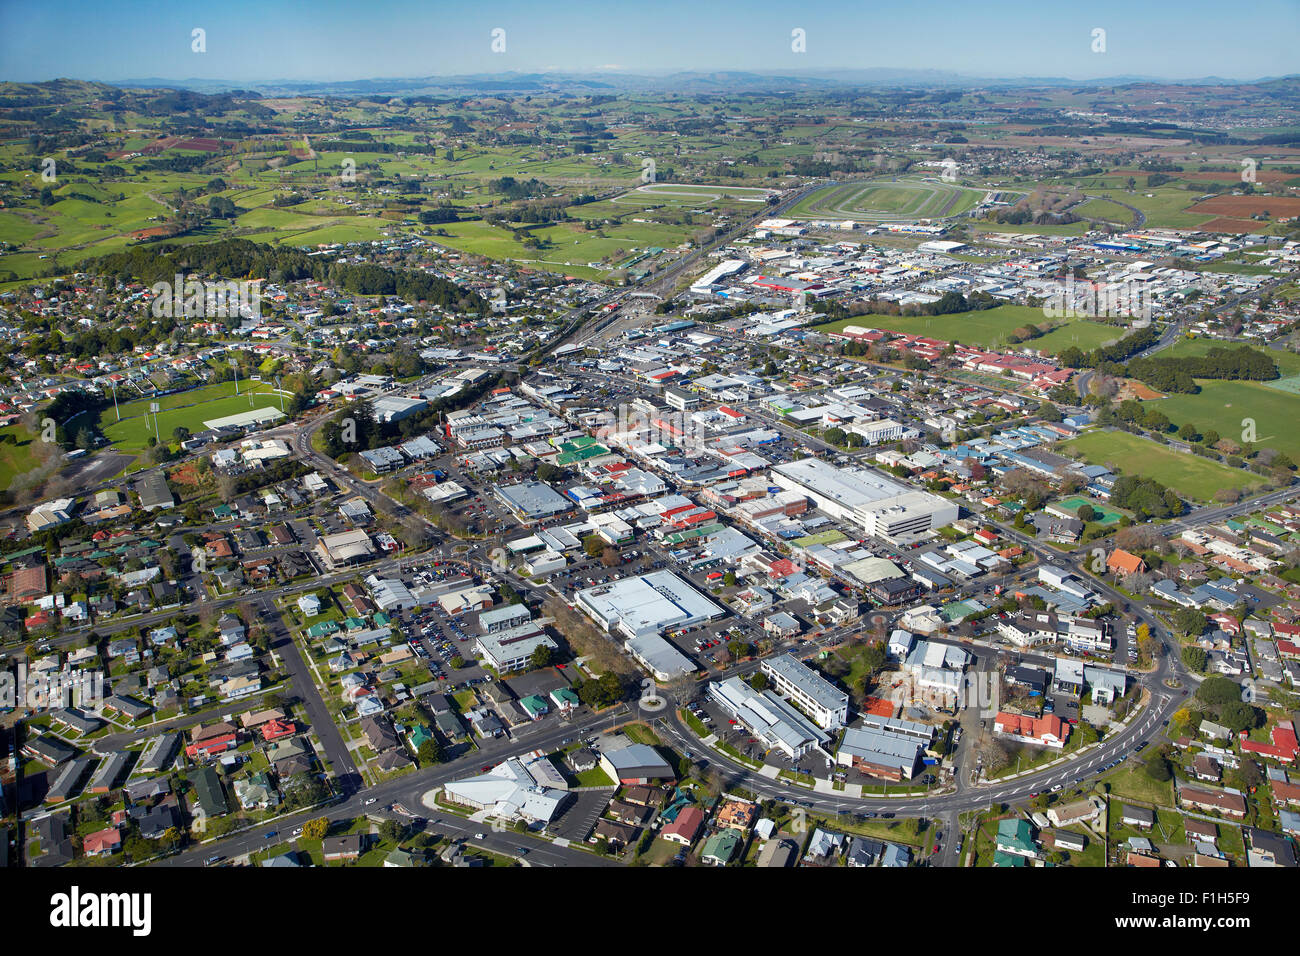 Le centre-ville de Pukekohe, South Auckland, île du Nord, Nouvelle-Zélande - vue aérienne Banque D'Images